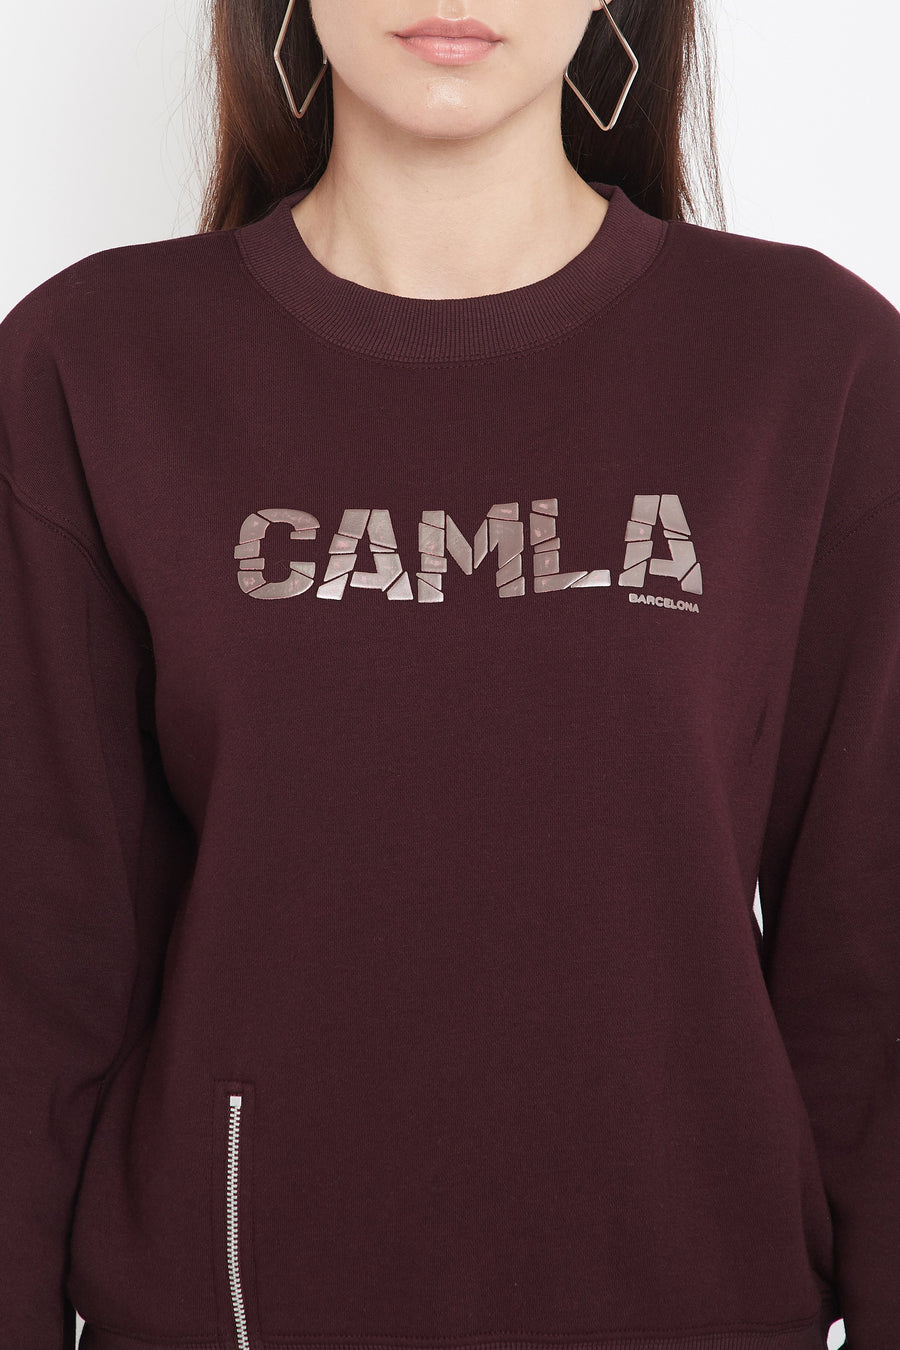 Camla Women Wine Sweat-Shirt